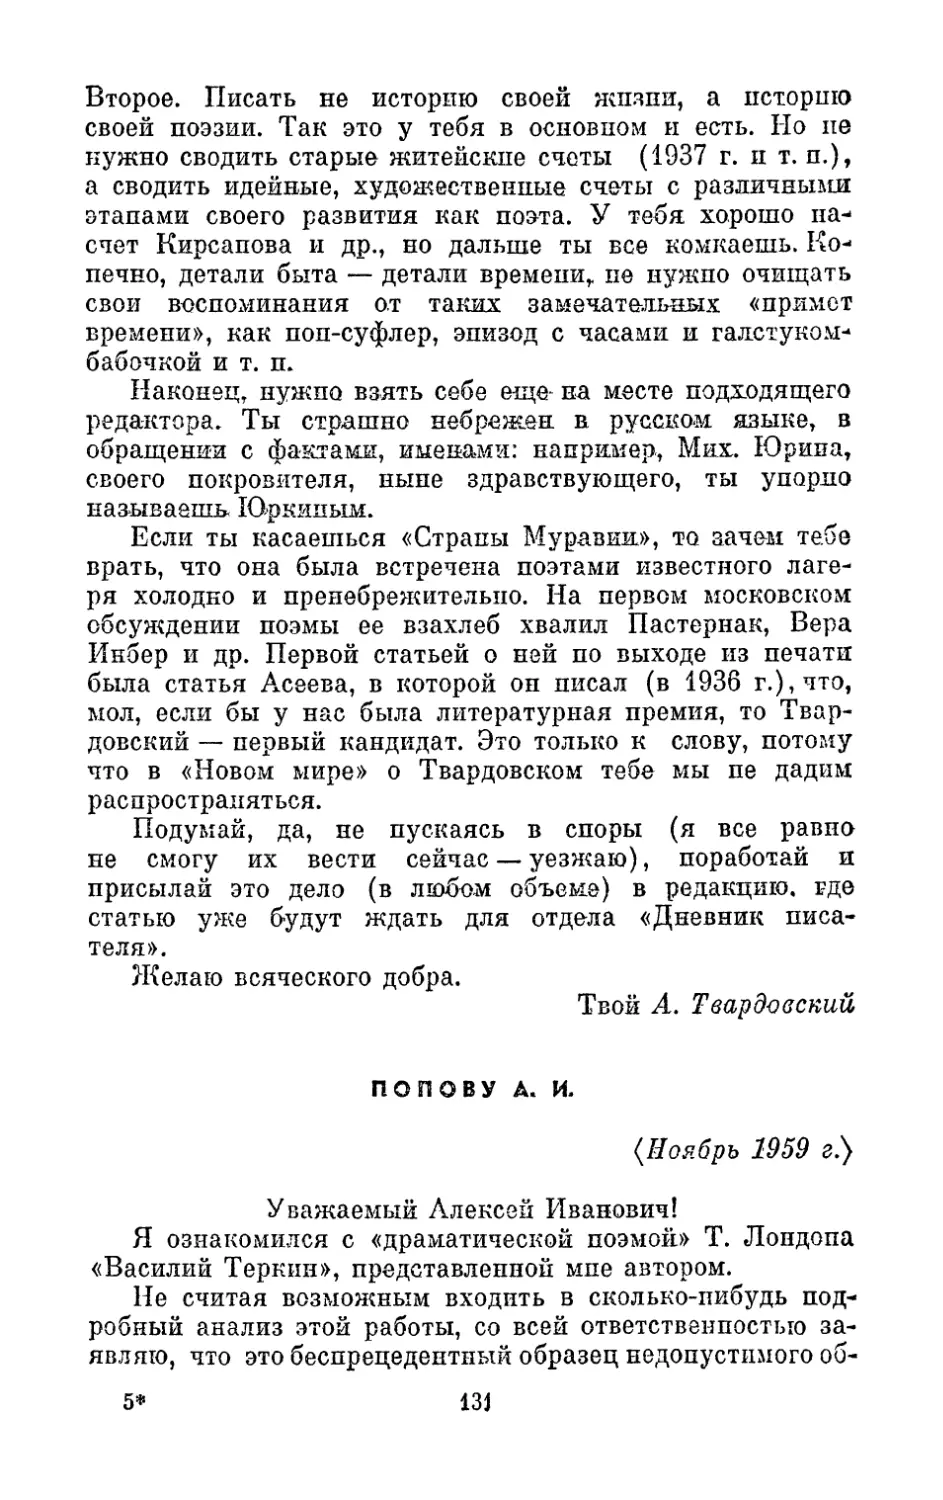 Попову А. И., <ноябрь 1959 г.>